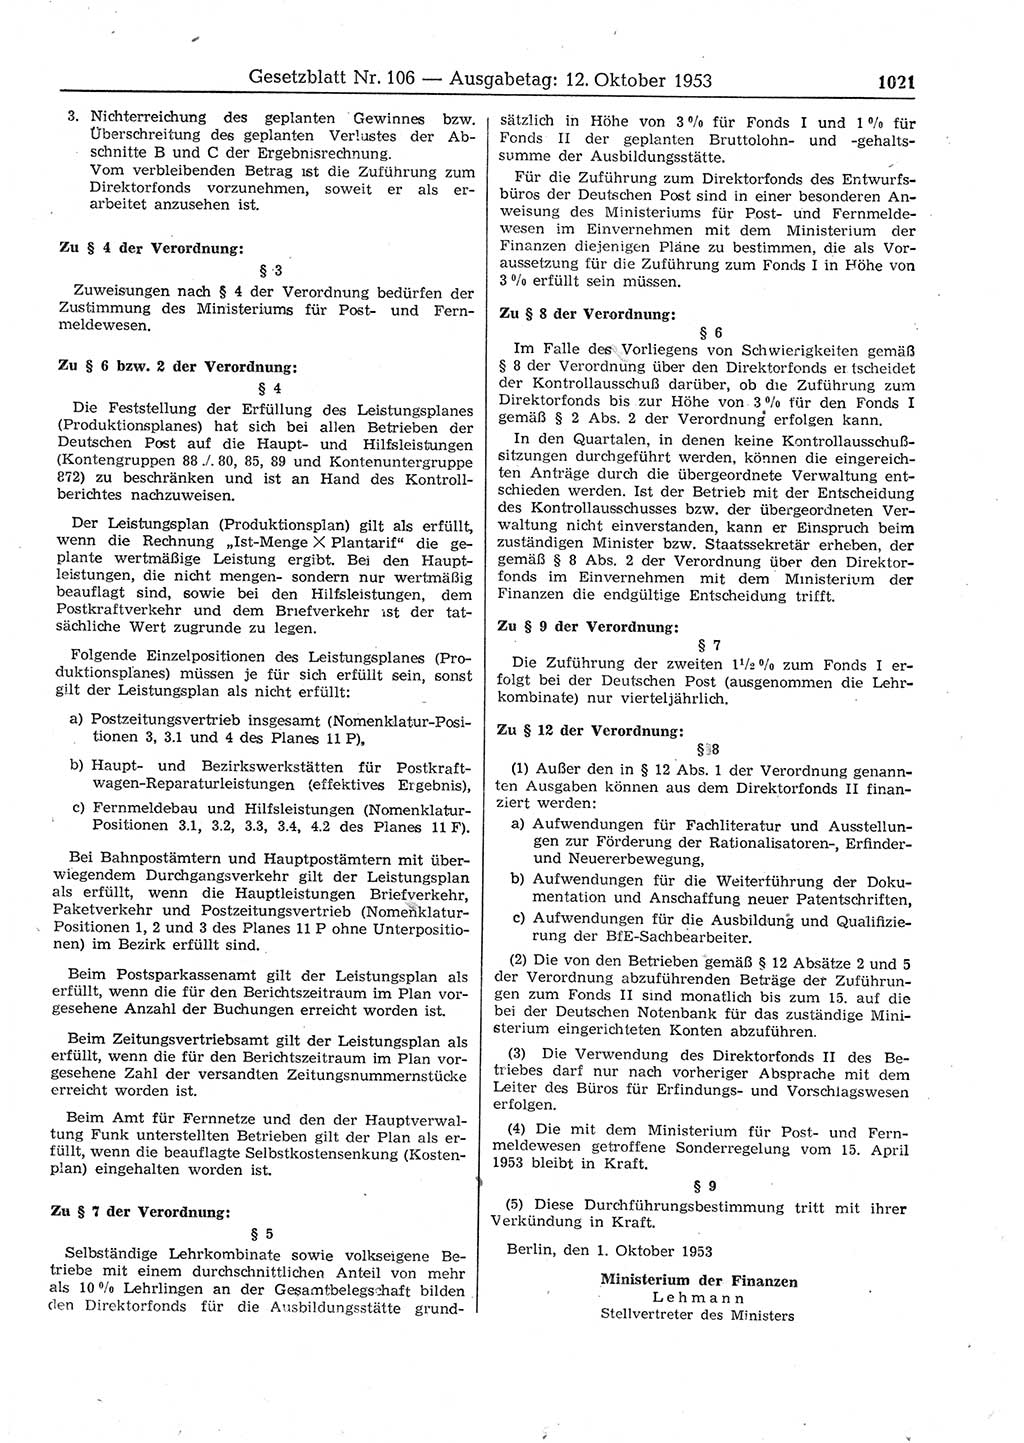 Gesetzblatt (GBl.) der Deutschen Demokratischen Republik (DDR) 1953, Seite 1021 (GBl. DDR 1953, S. 1021)